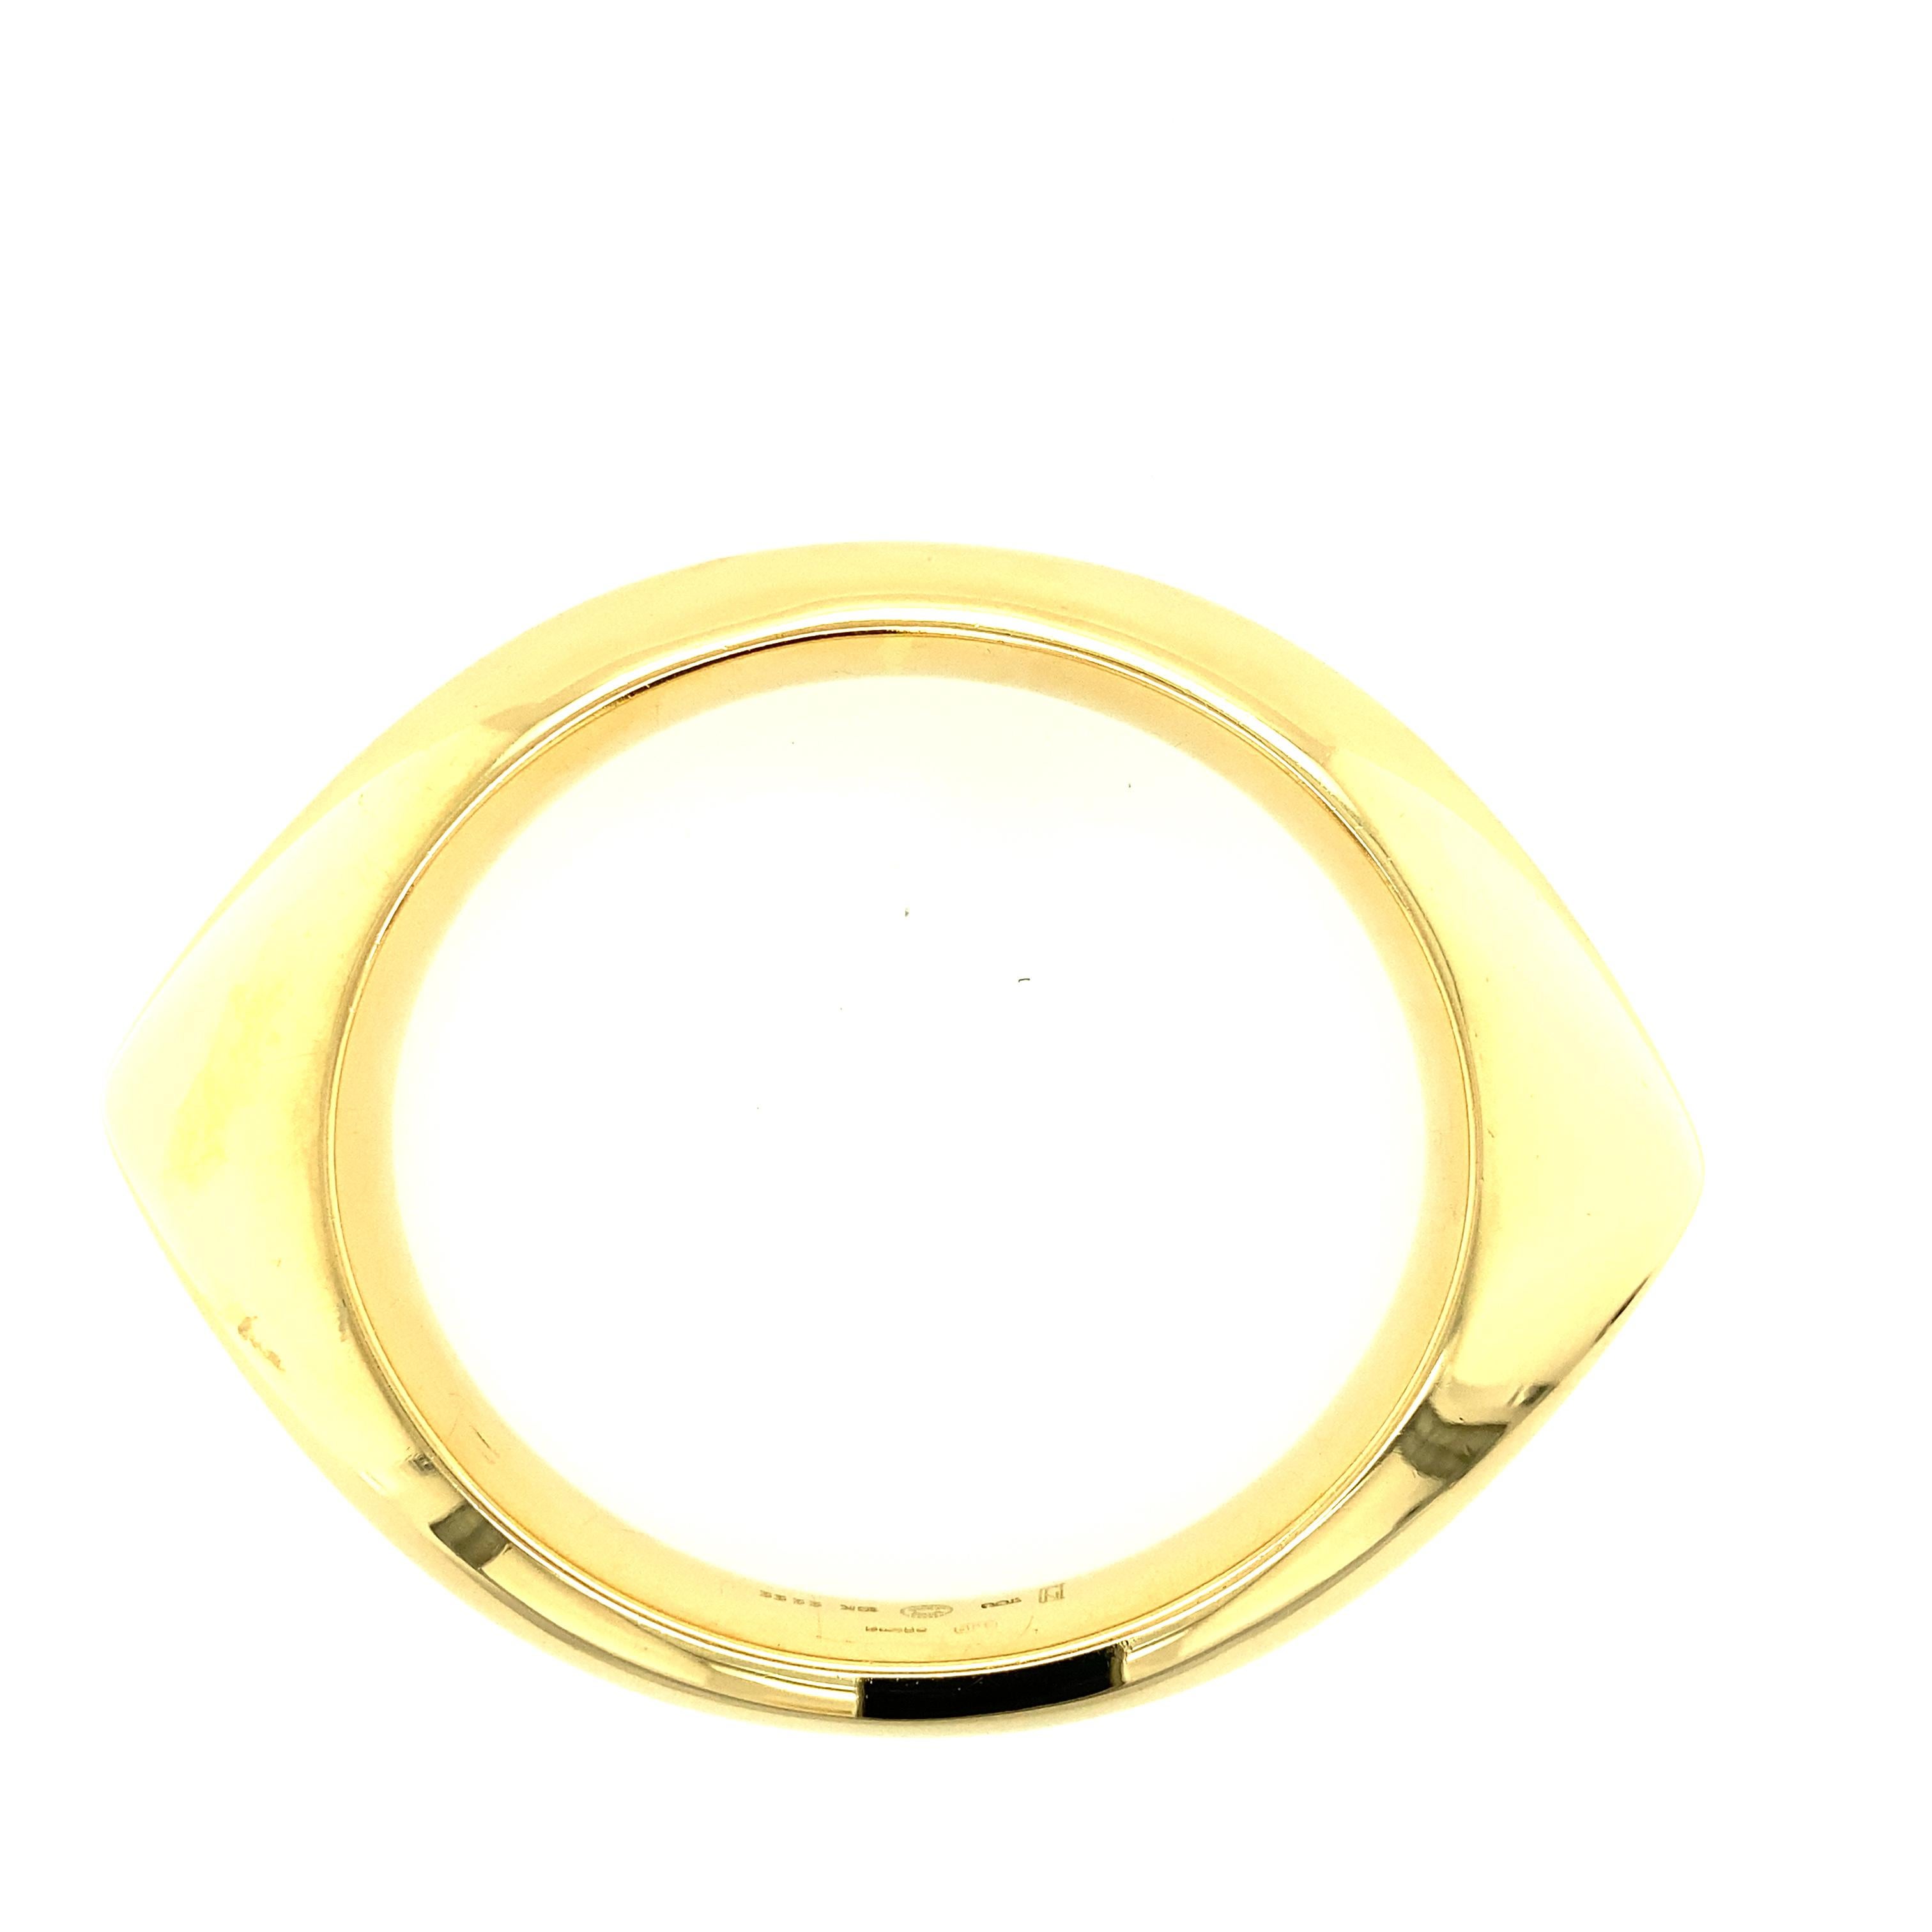 Modern Mid-Century Gold Bangle Bracelet by Nanna DItzel for Georg Jensen